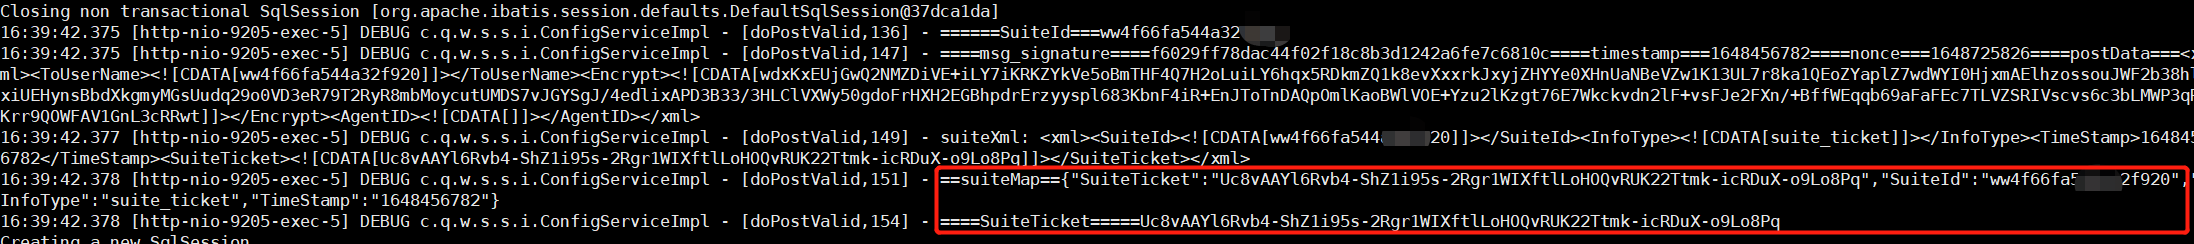 企业微信第三方应用（三）基于springboot开发（获取Ticket，auth_code）